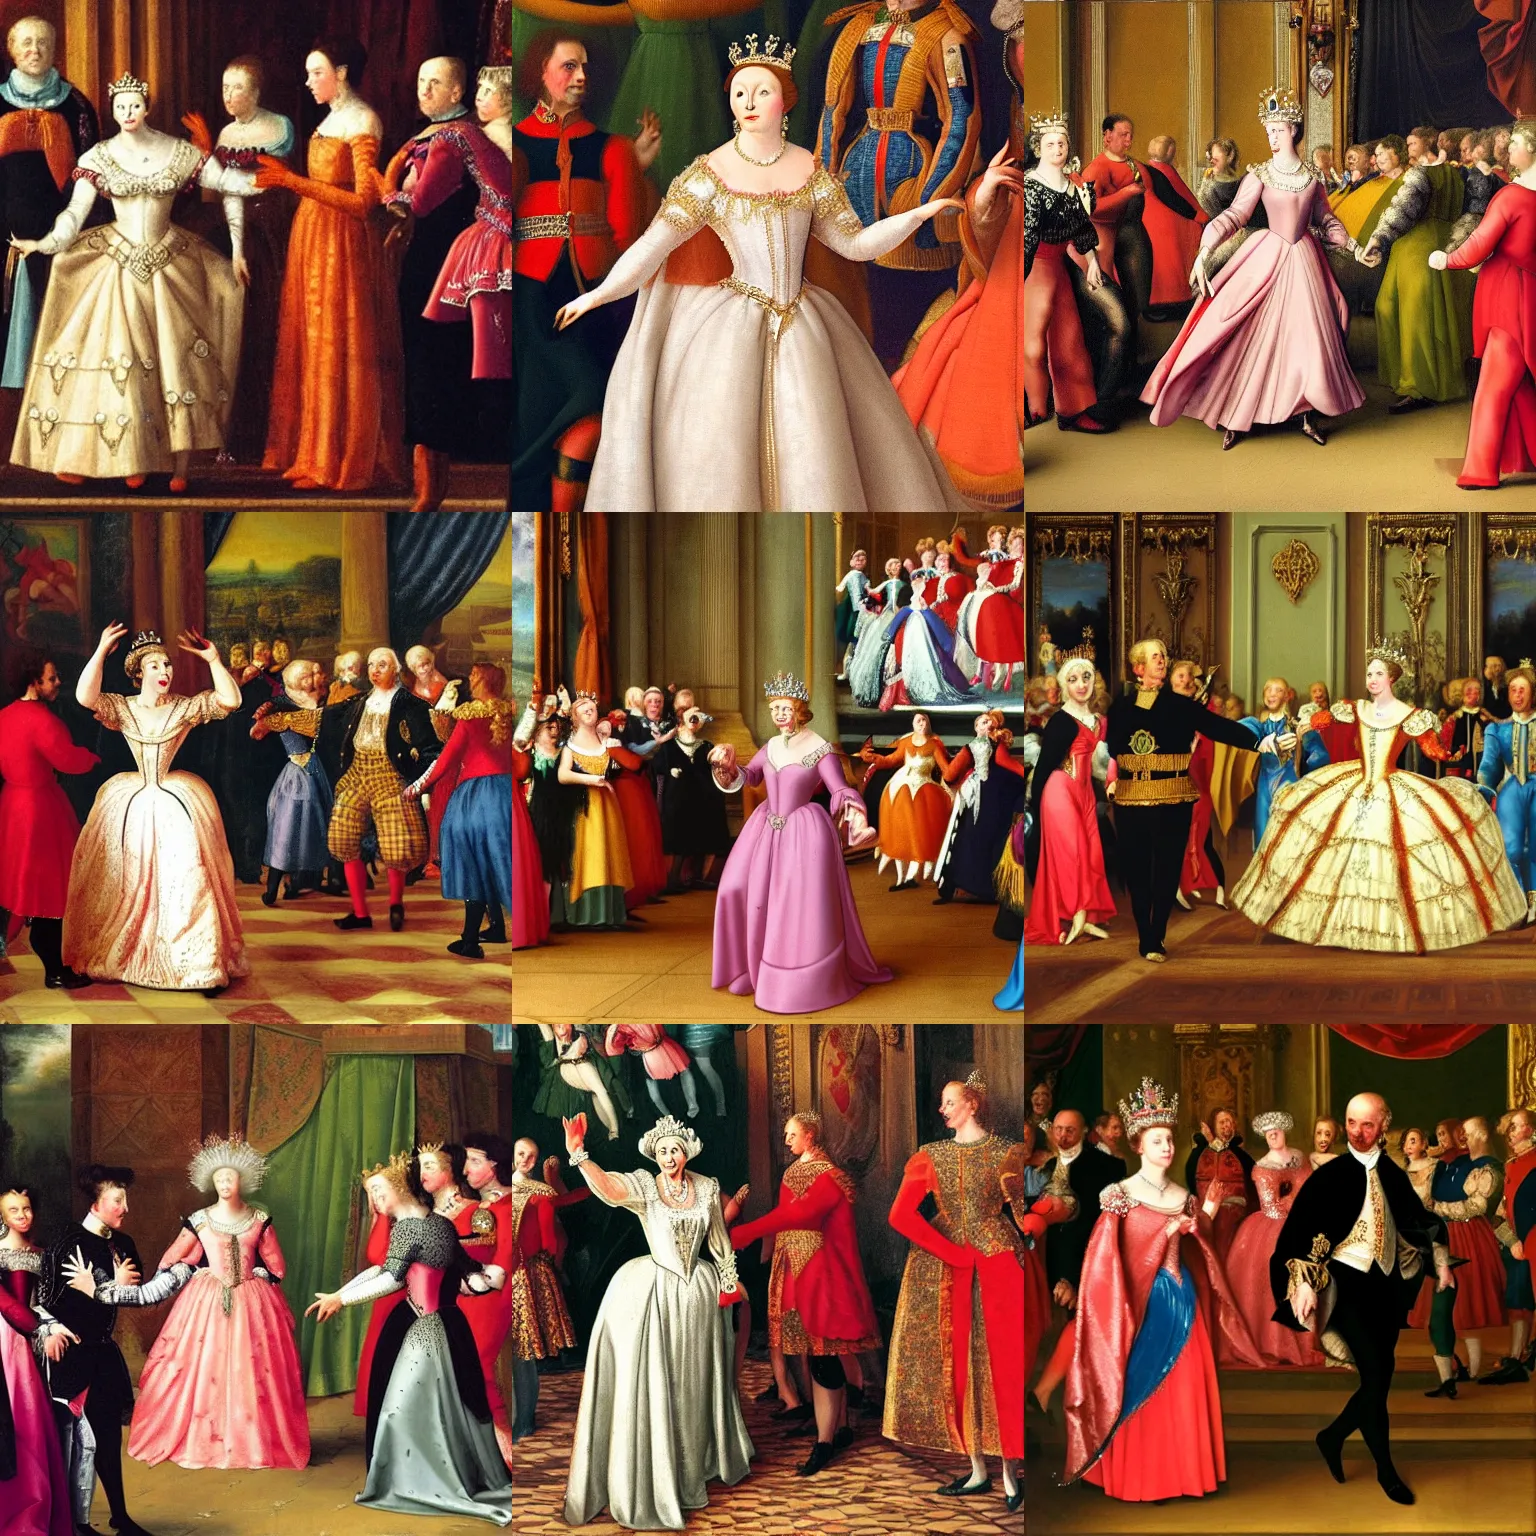 Prompt: queen elizabeth dancing at a disco concert renaissance painting